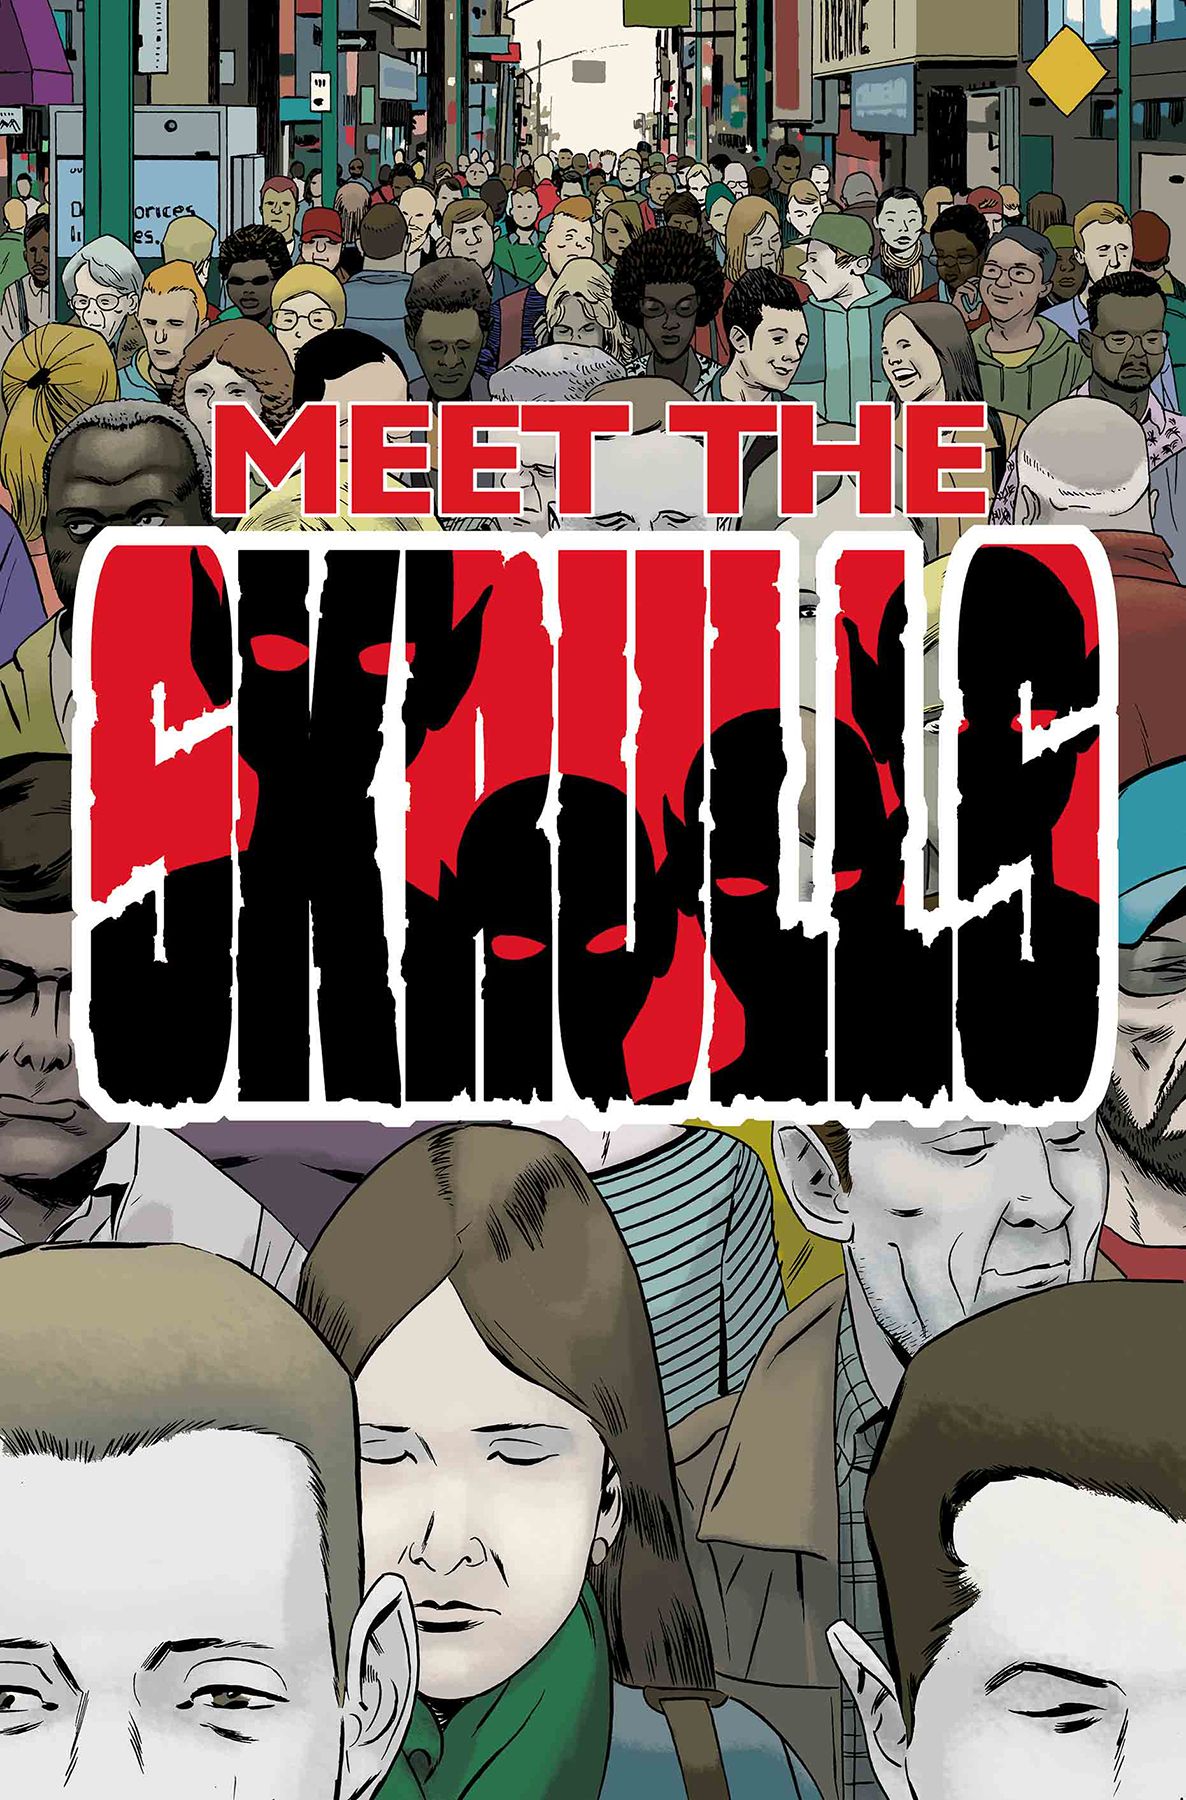 Meet The Skrulls #5 Comic